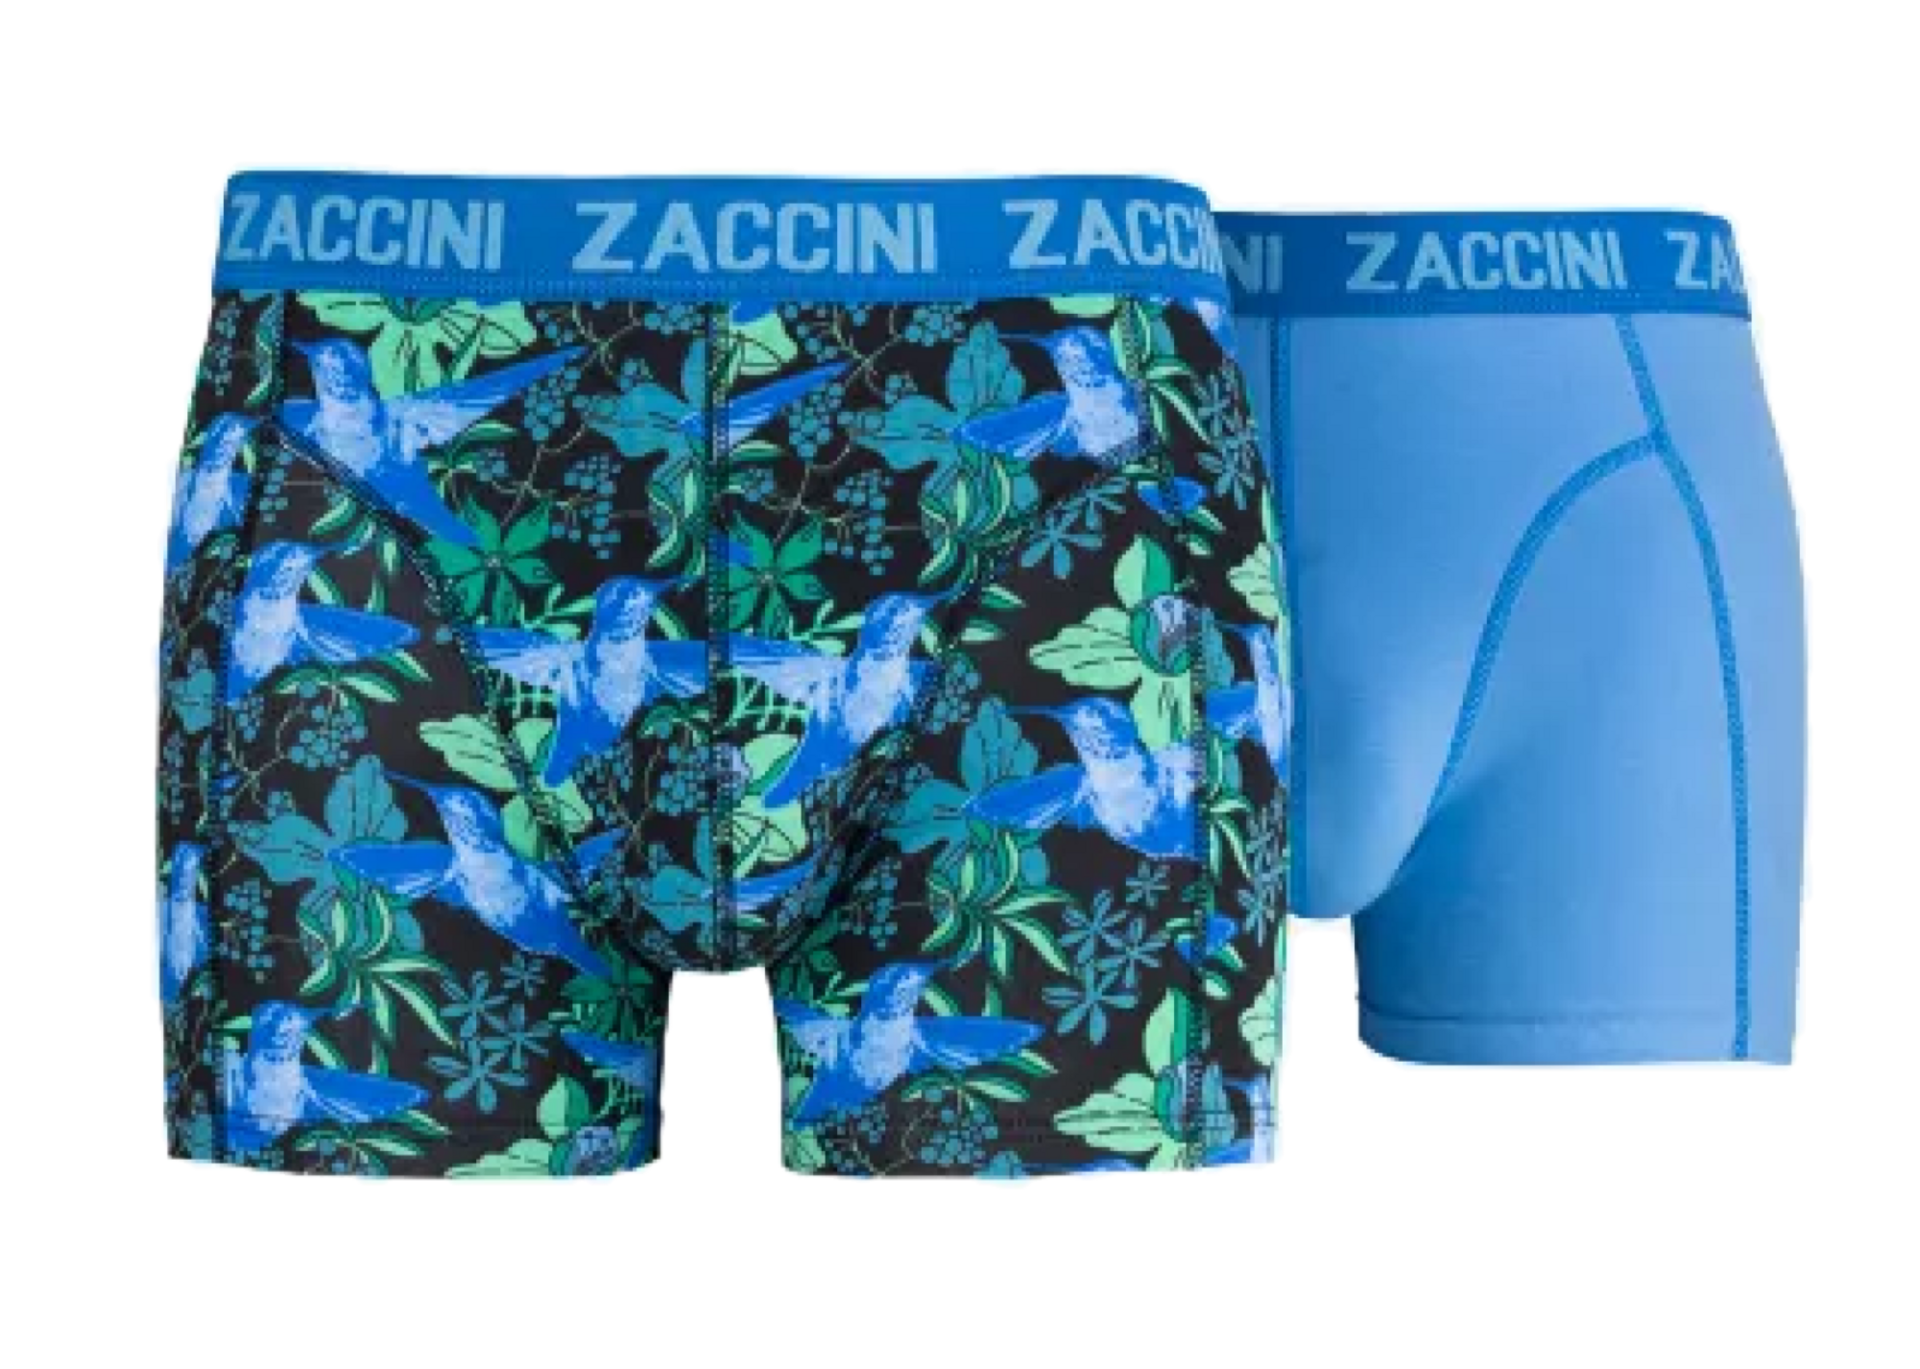 Boekhouding Aangenaam kennis te maken Voorbeeld Zaccini 2-pack Heren boxershorts Blue